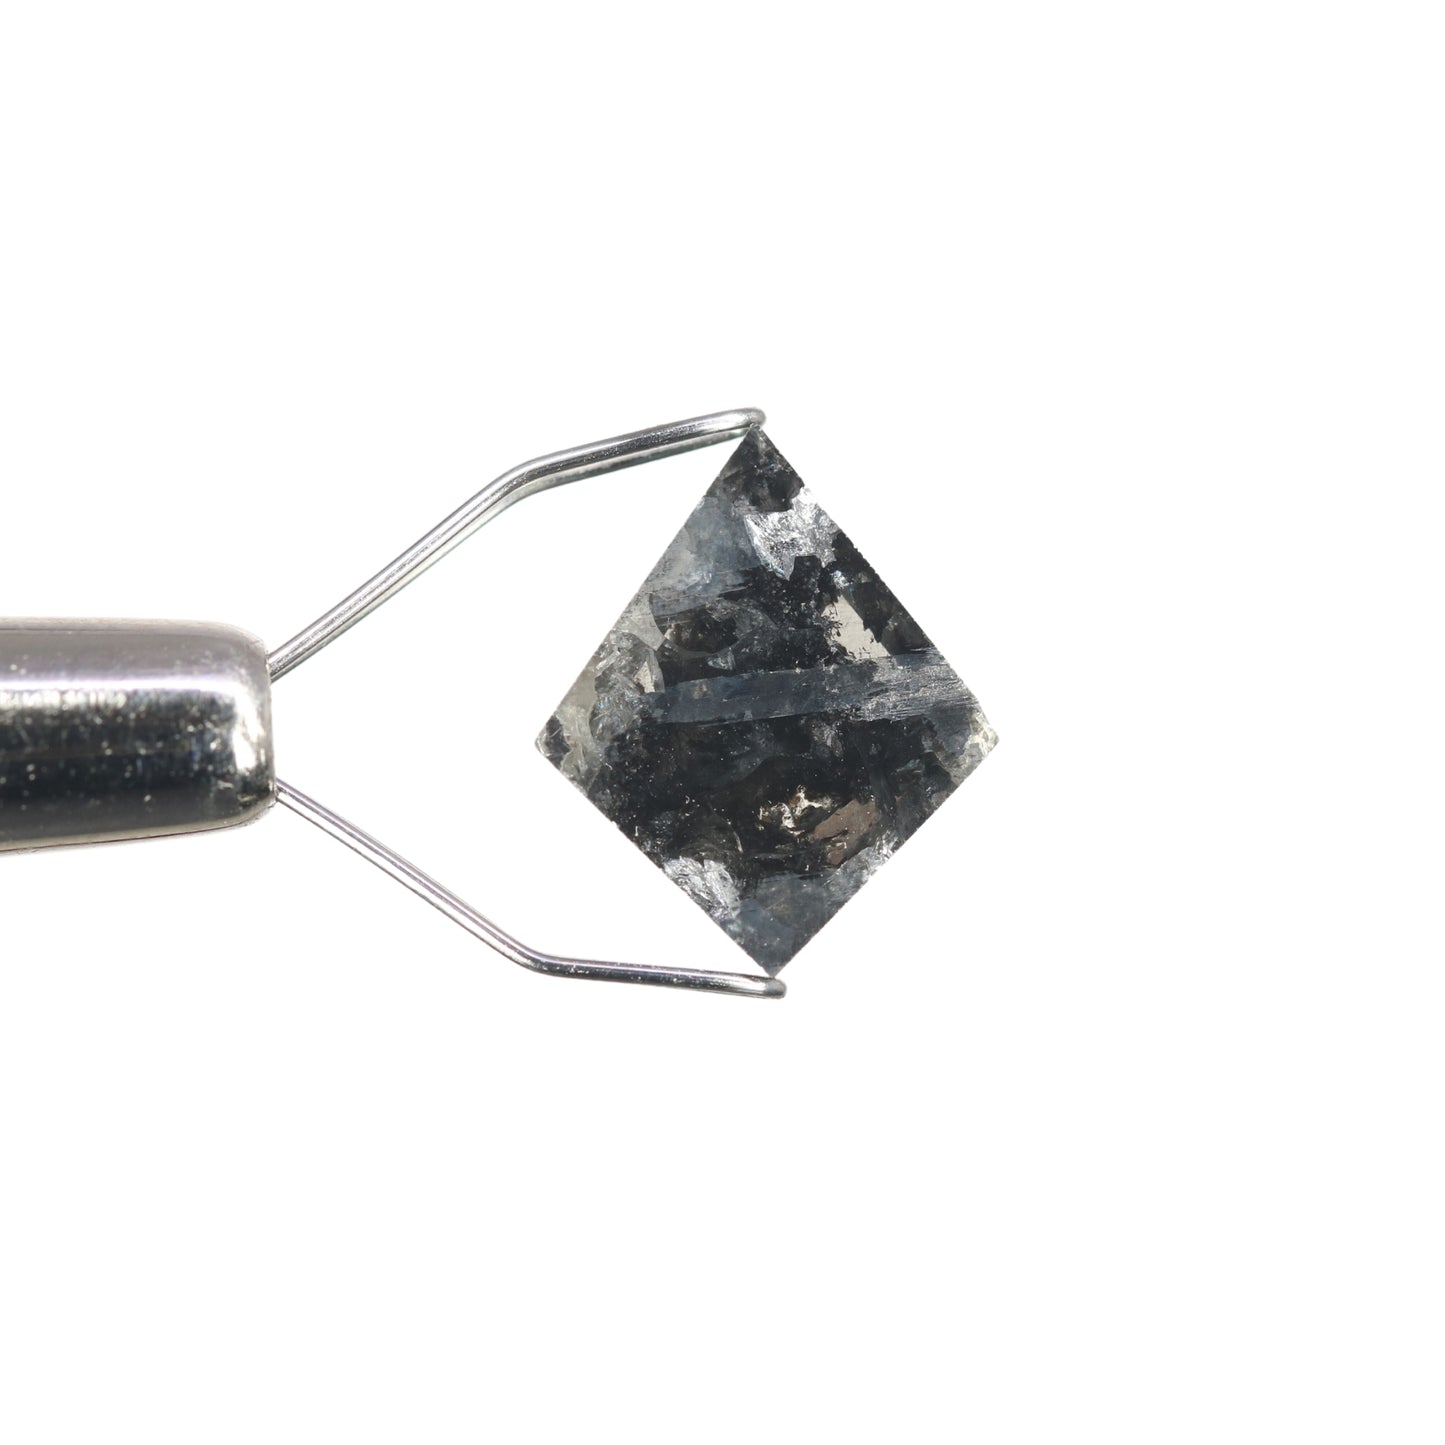 1.49 CT Kite Shape Fancy Salt And Pepper Diamond For Engagement Ring | Gift For Her